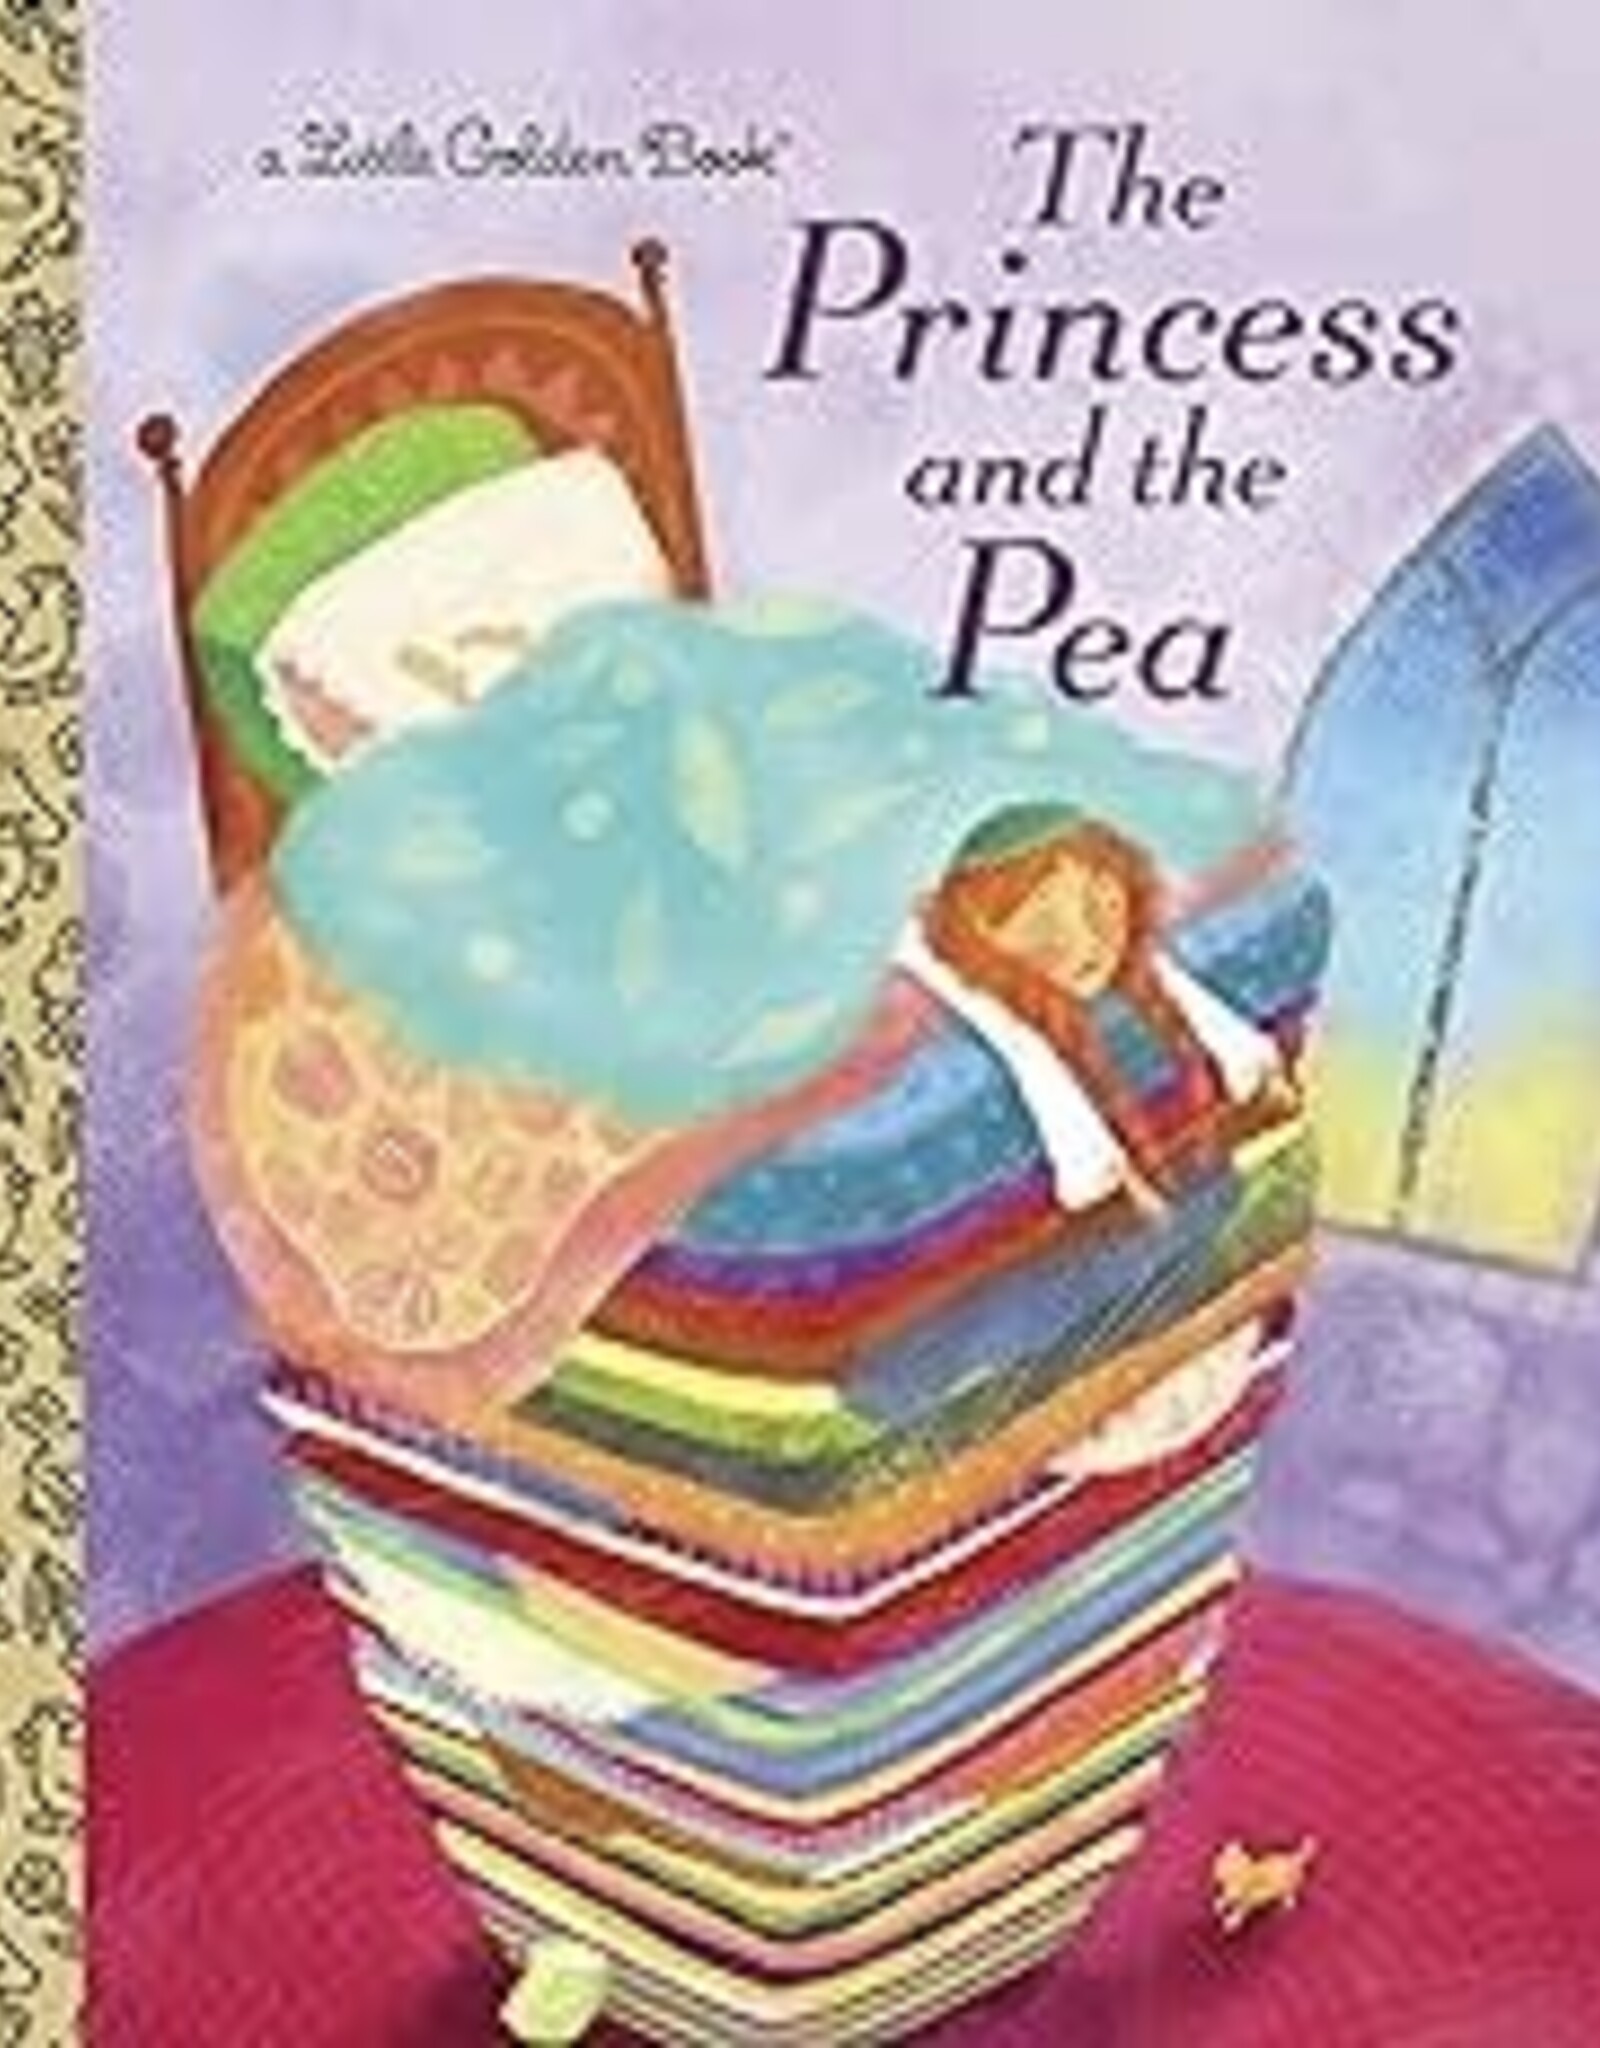 Penguin Random House LGB The Princess and the Pea